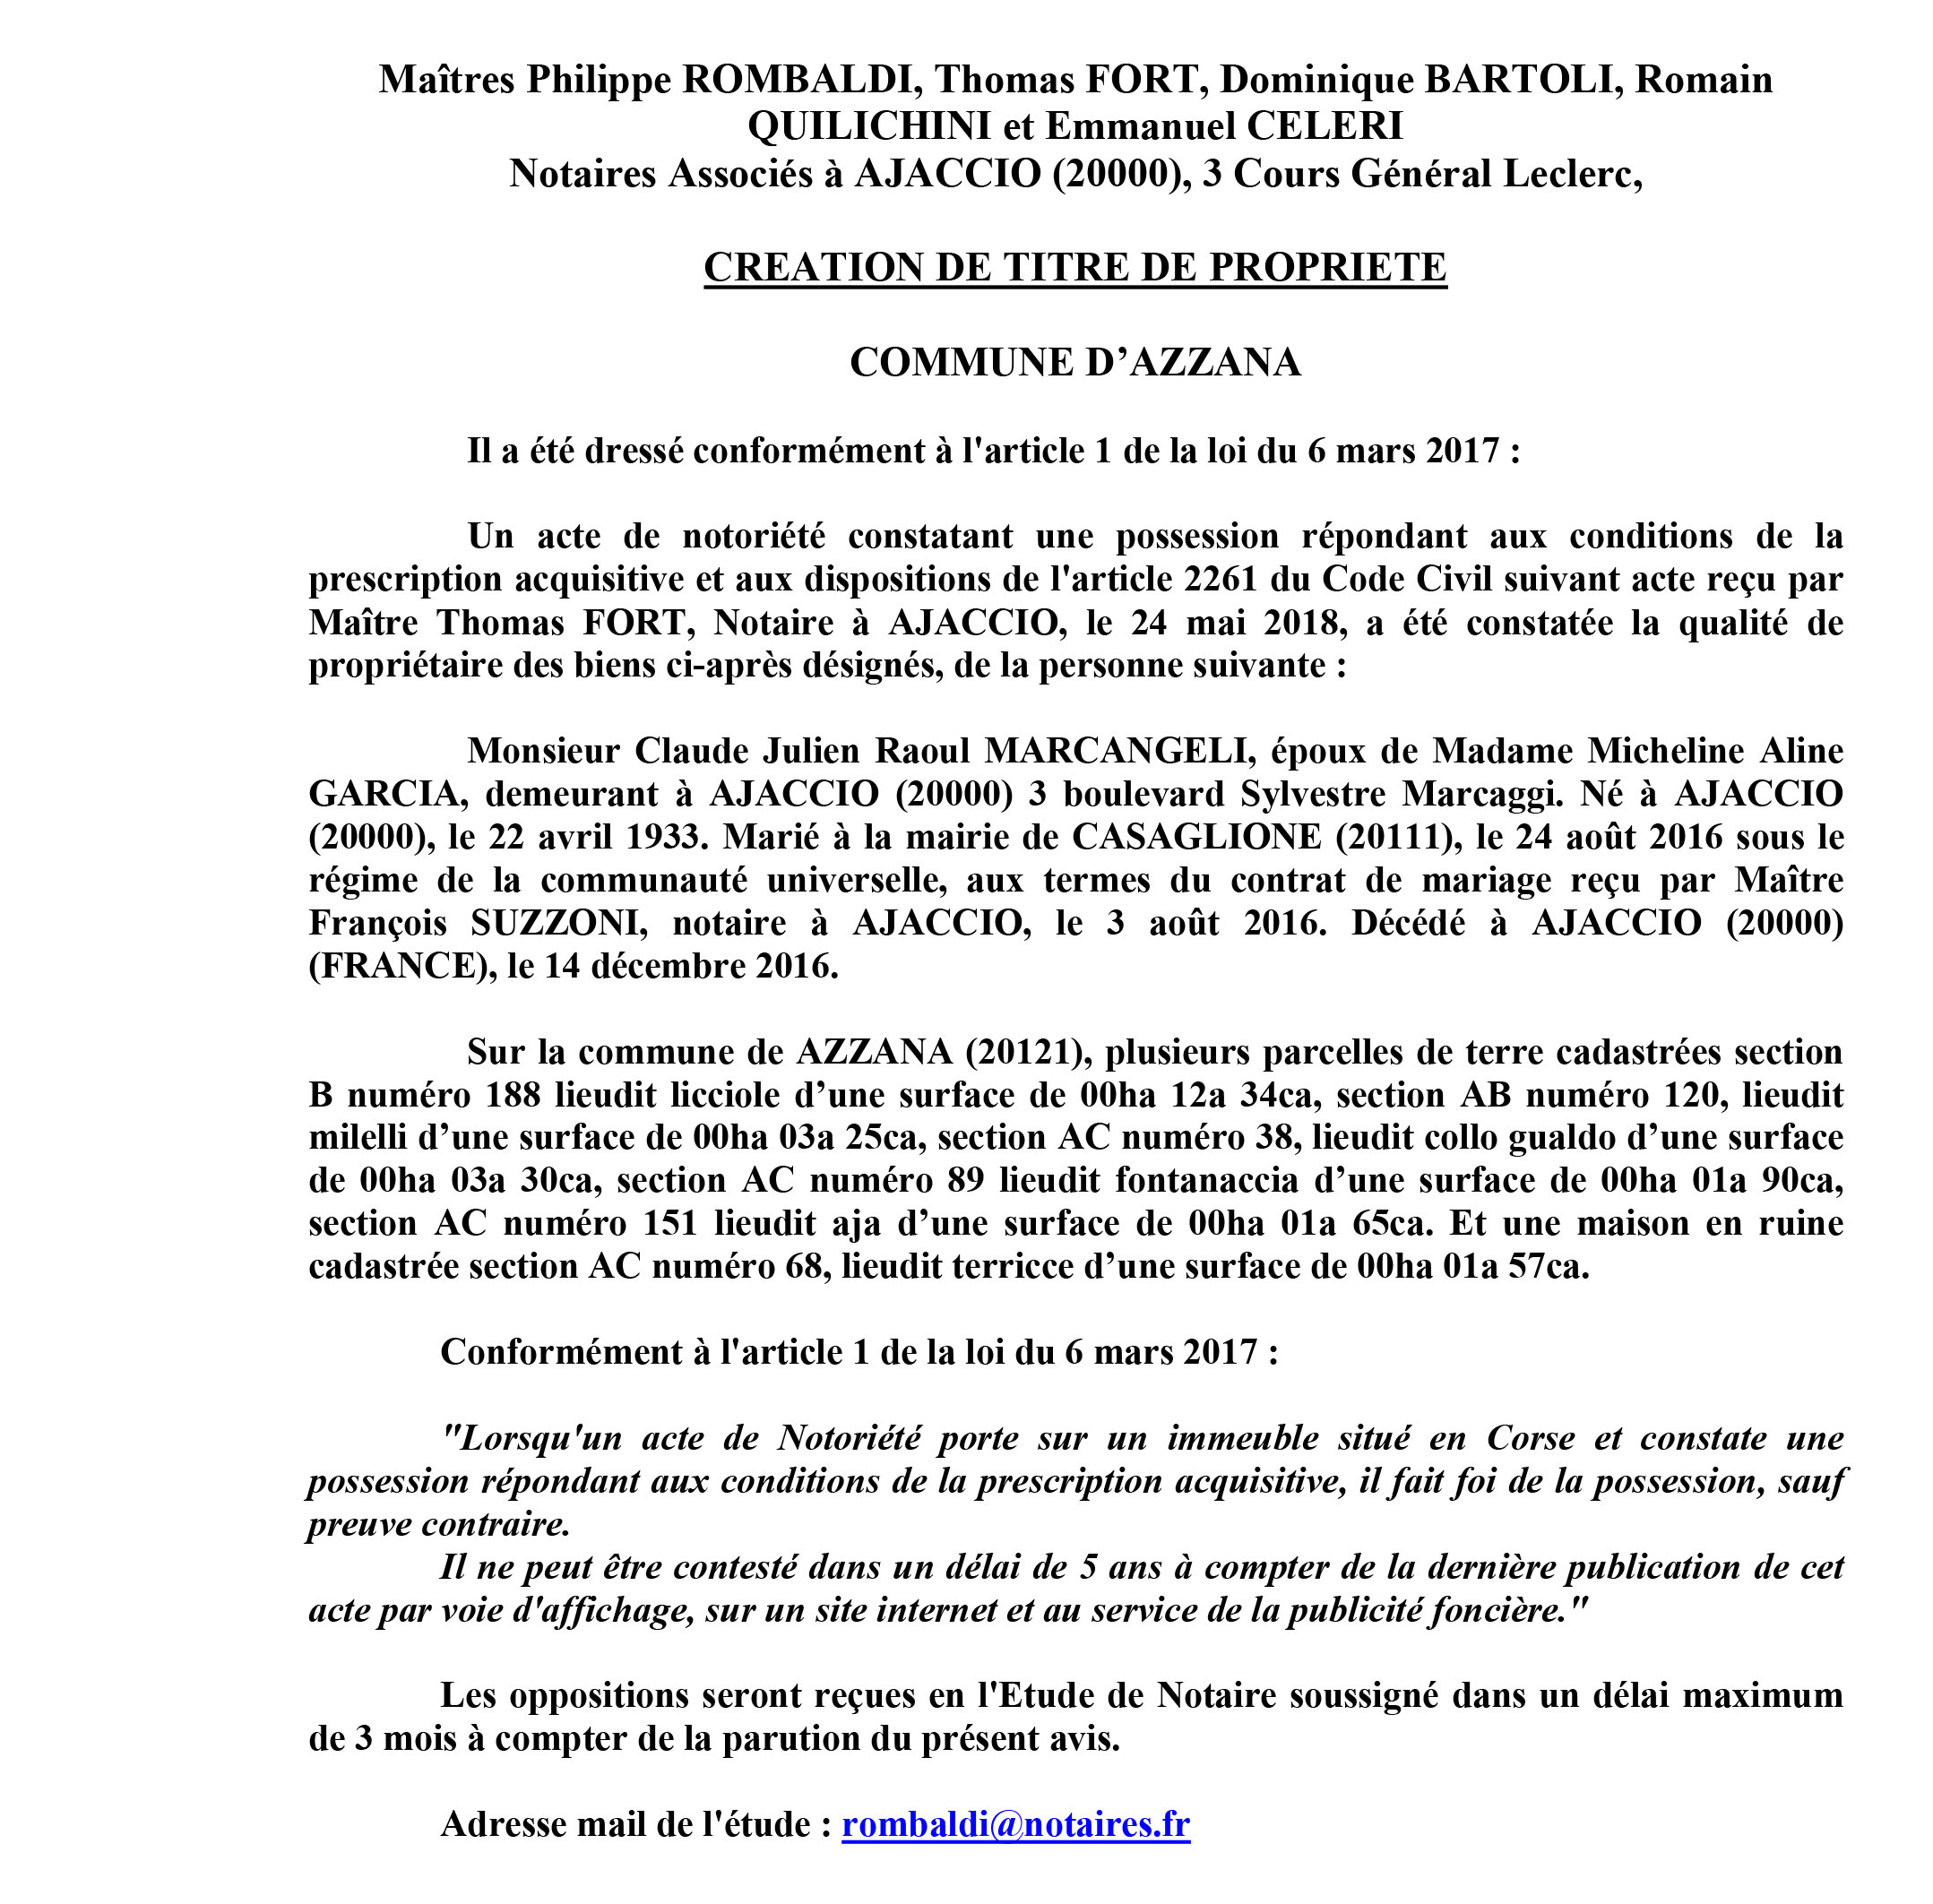 Avis de création de titre de propriété - commune d'Azzana (Corse du Sud)